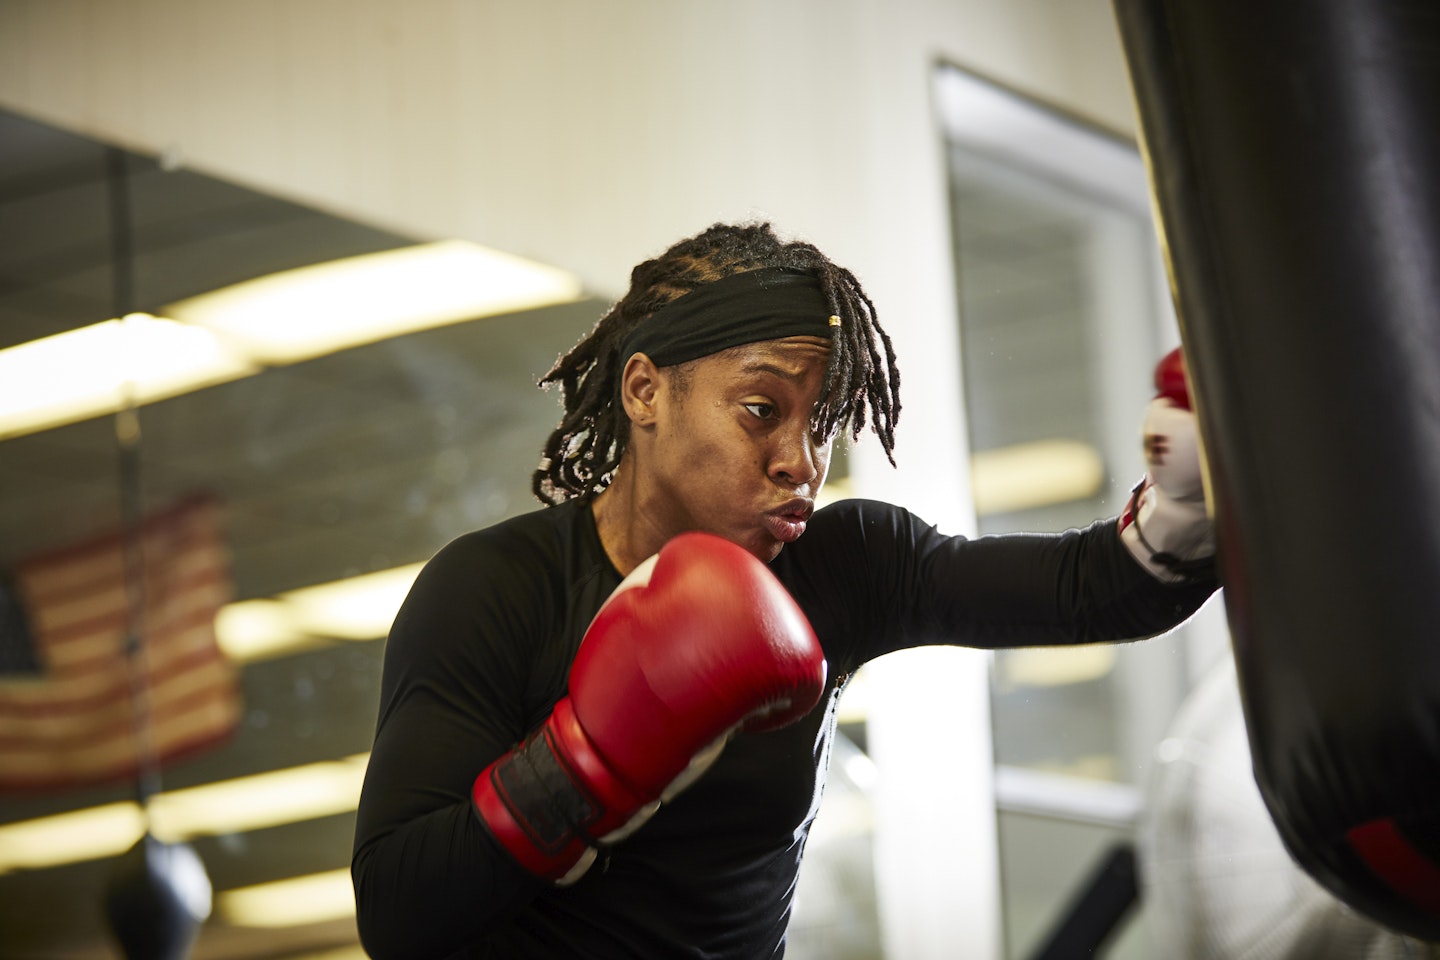 Woman wearing boxing gloves punching bag